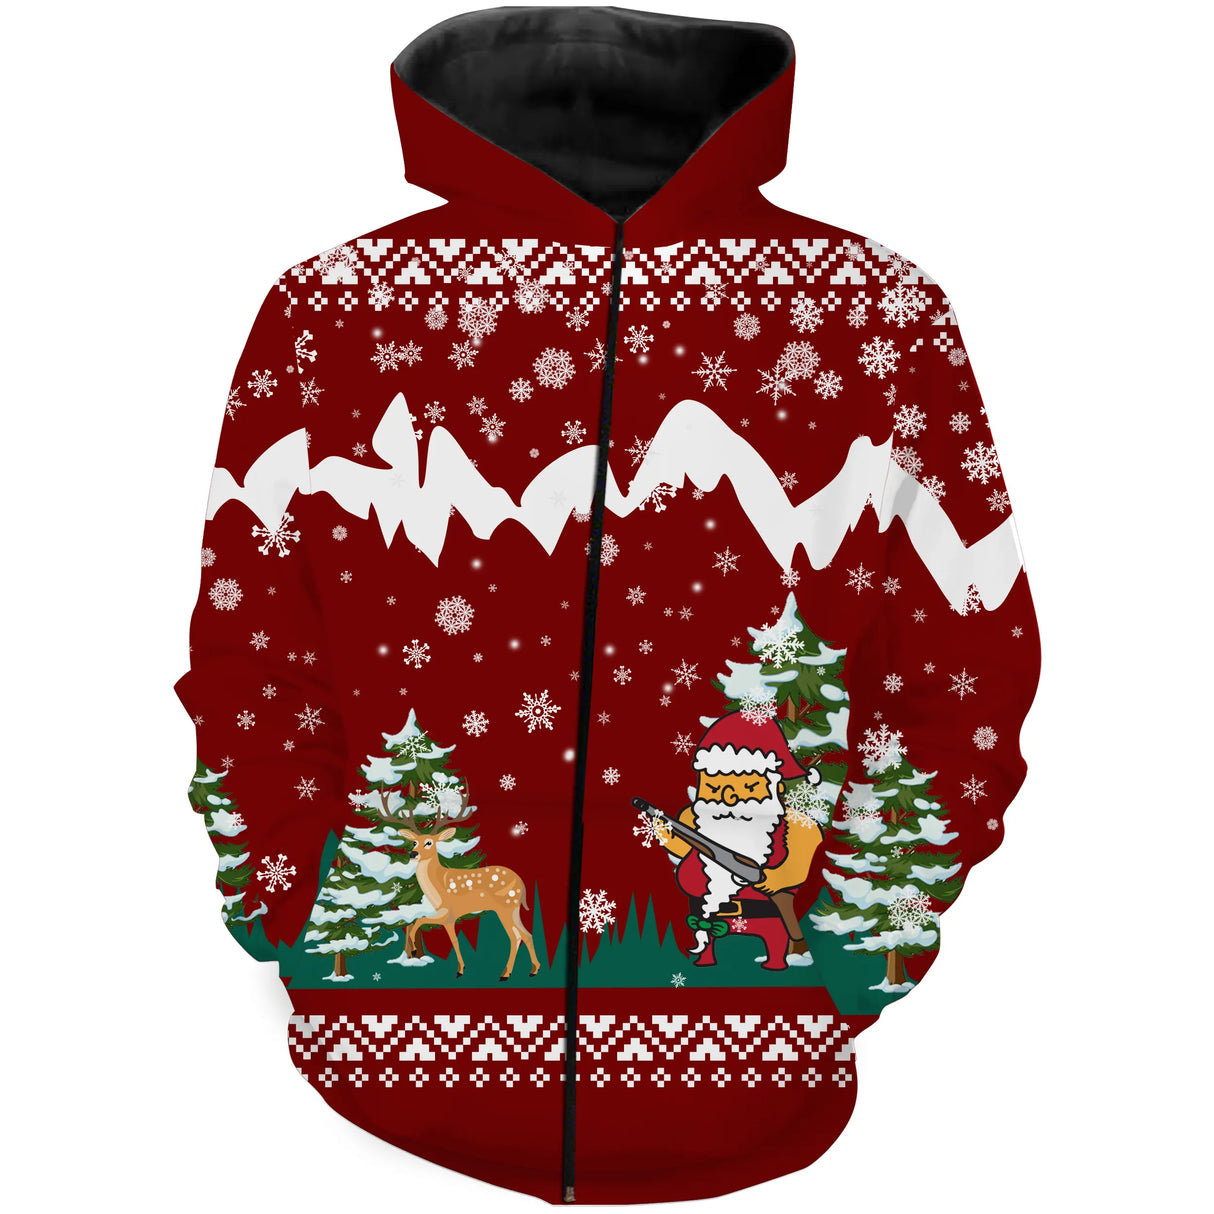 Maglione natalizio rosso, caccia al cervo di Babbo Natale, regalo di Natale per cacciatore - CT12112245